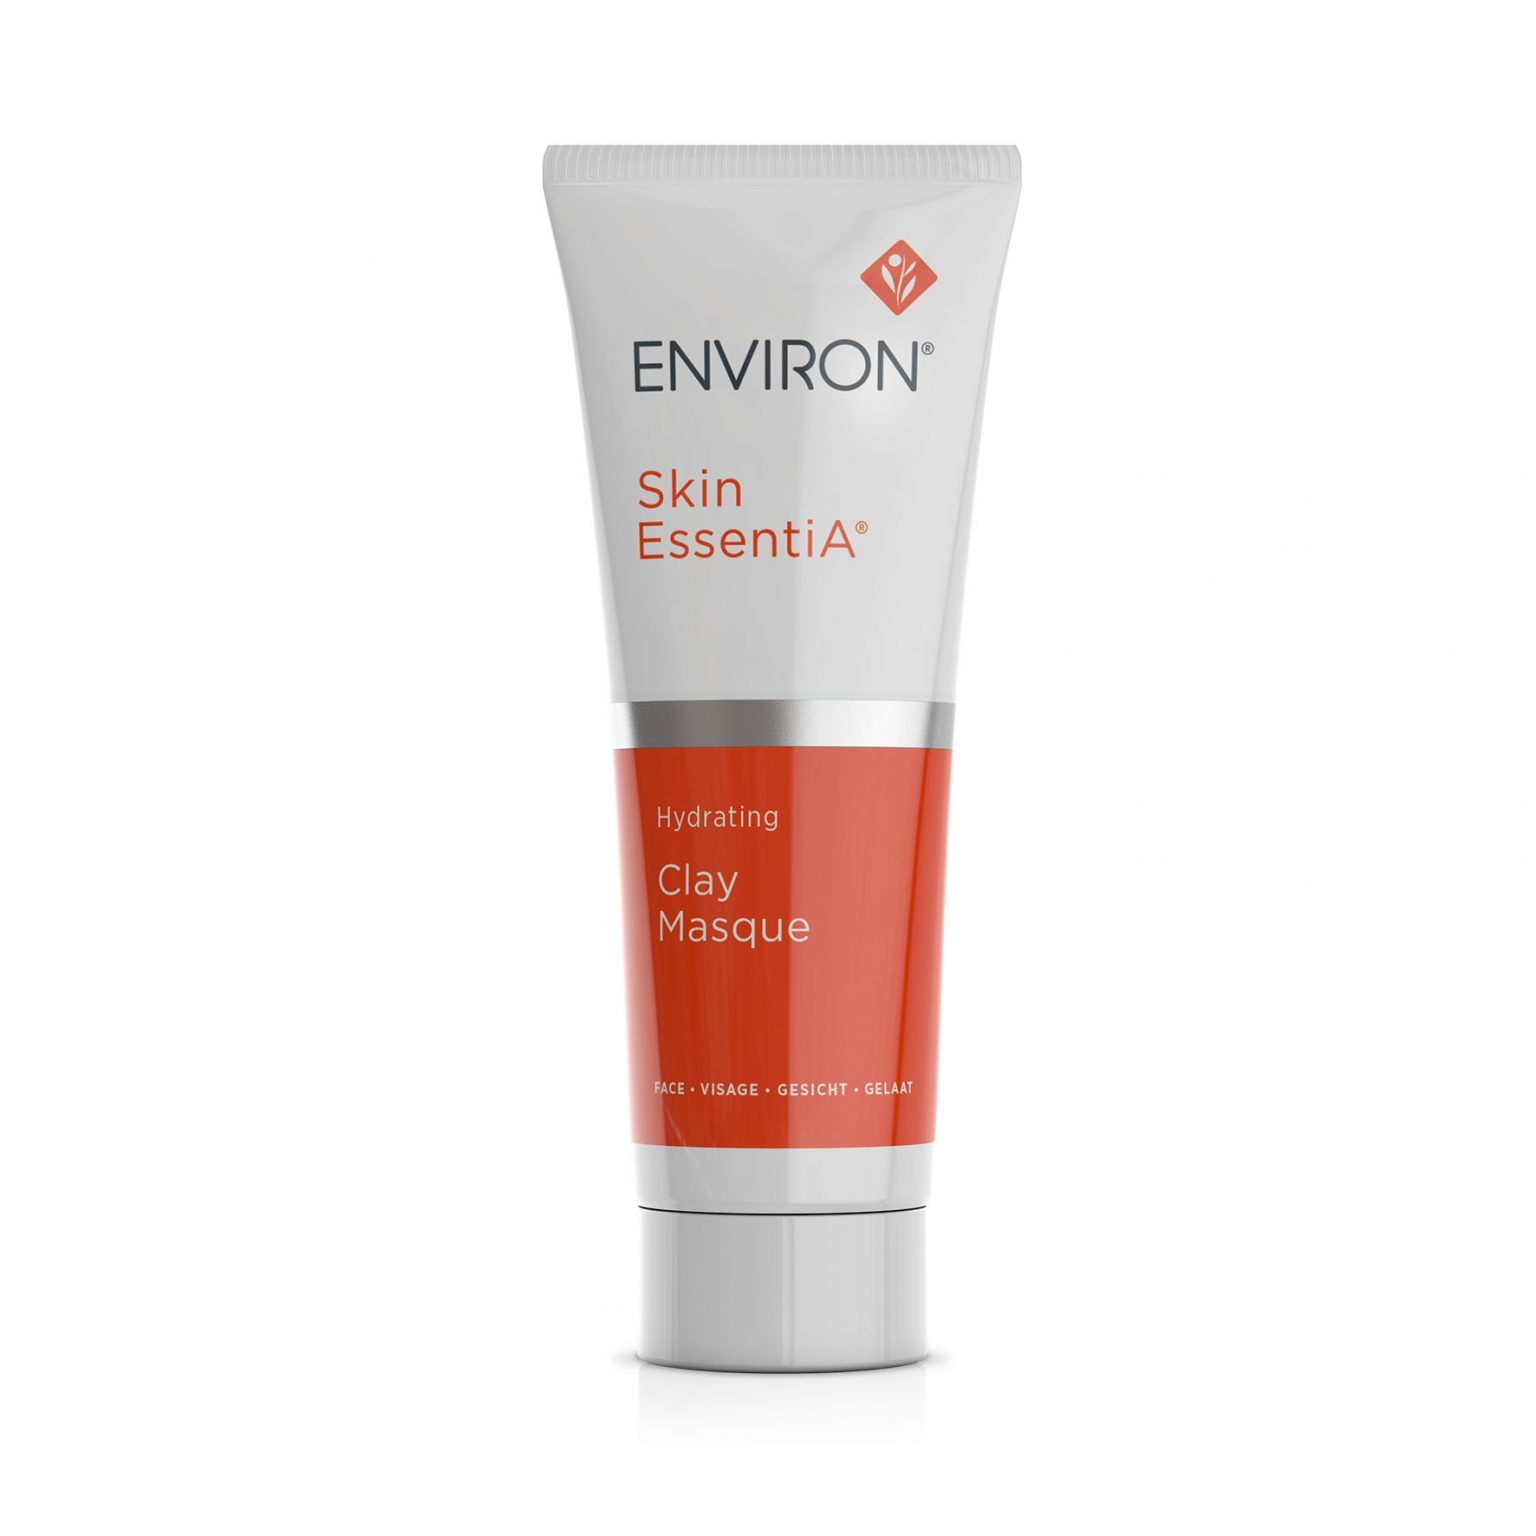 Environ Skin EssentiA® Hydrating Clay Masque 50ml